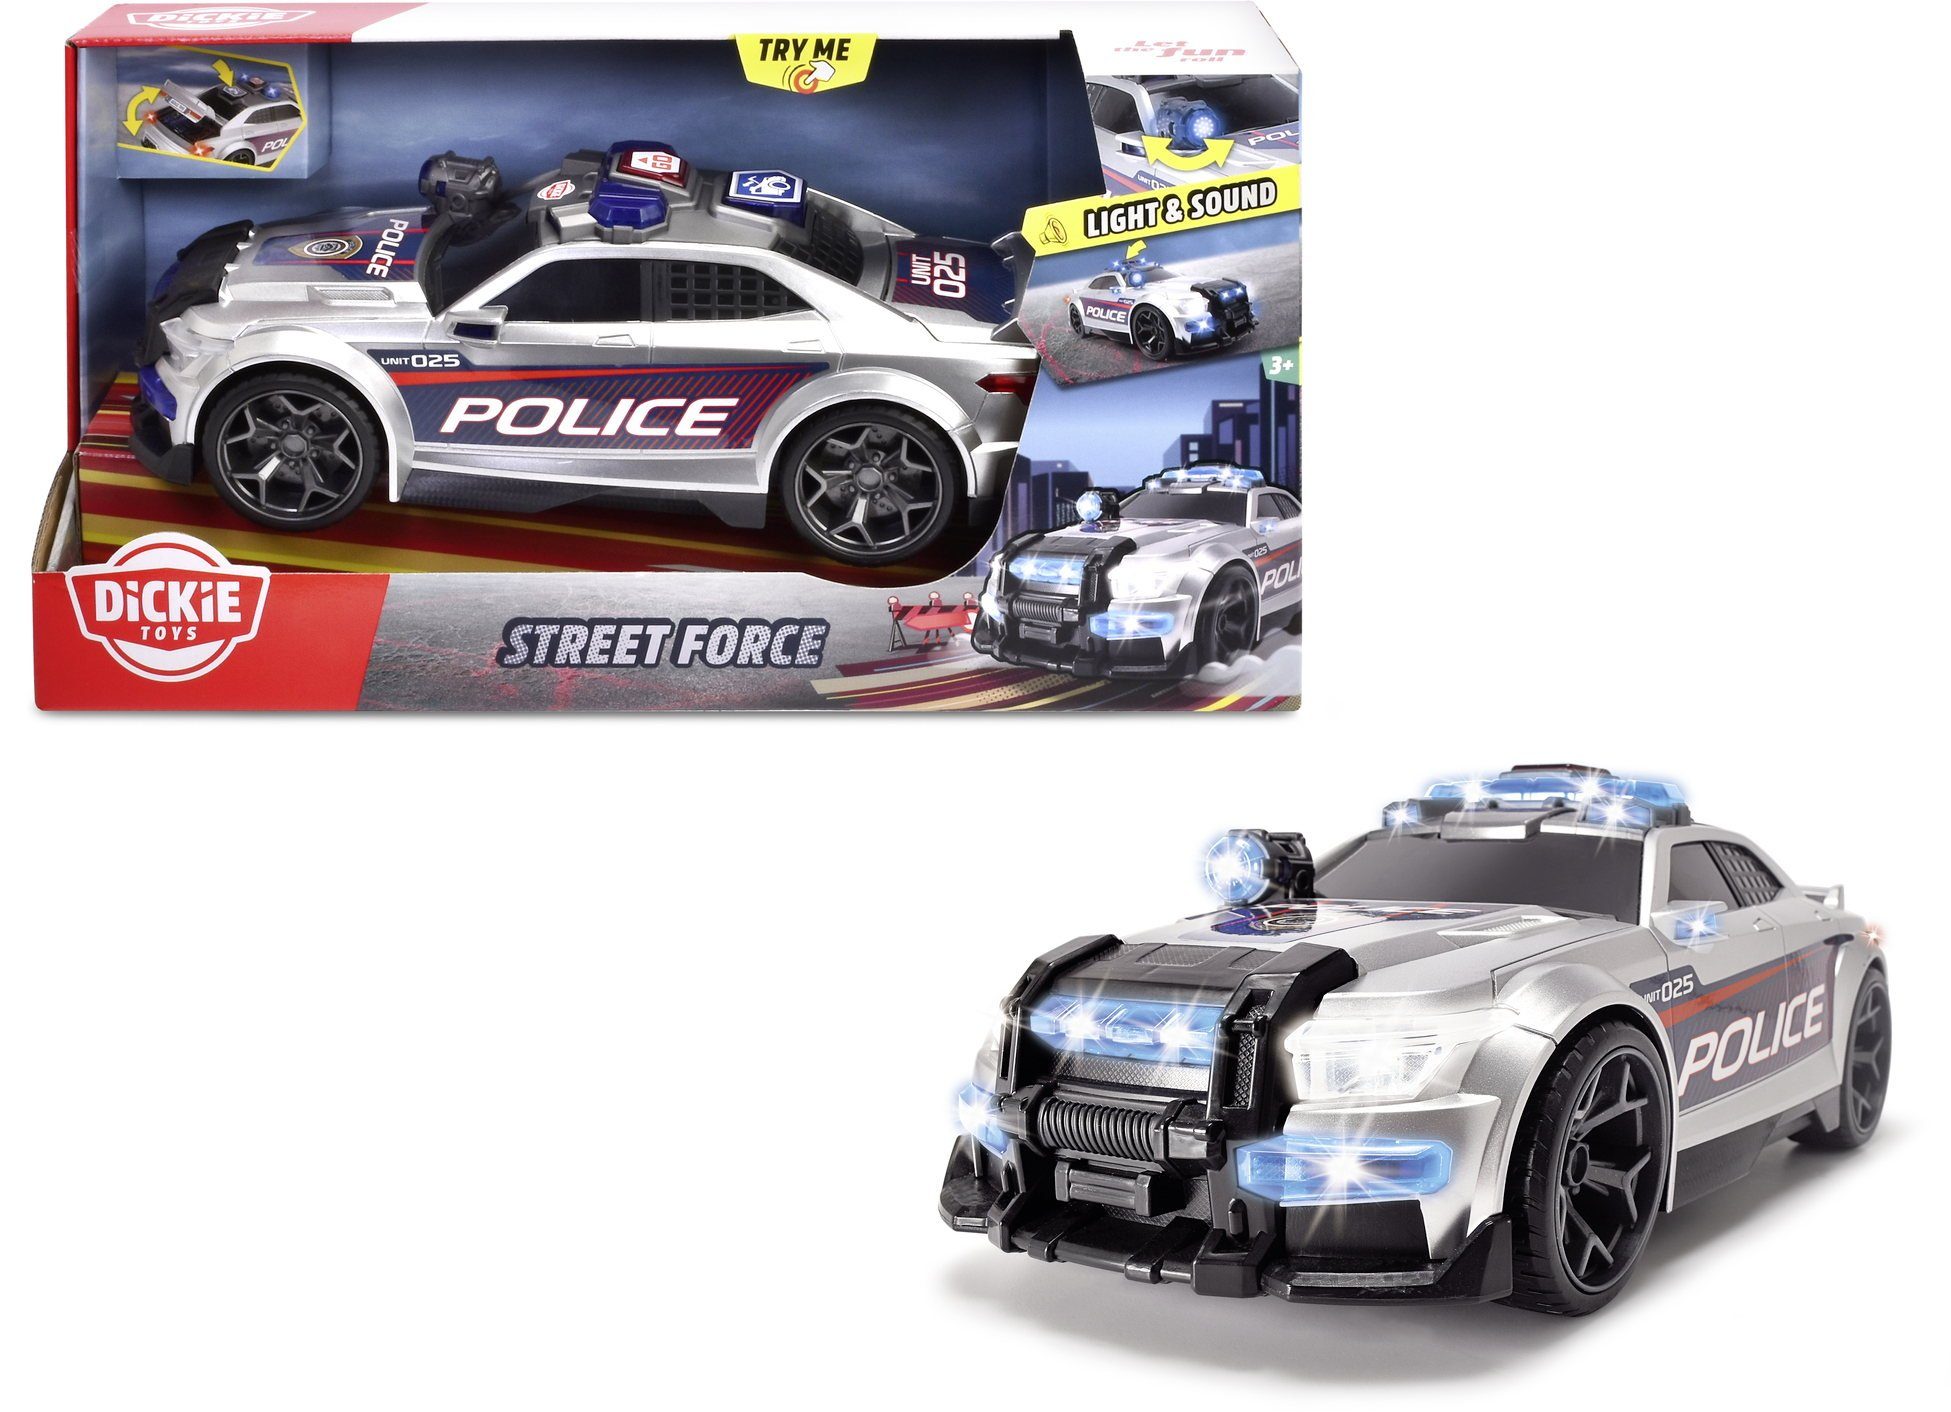 Dickie Toys / Force Fahrzeug Street Heroes 203307004 Polizei Action City Go Spielzeug-Polizei Auto